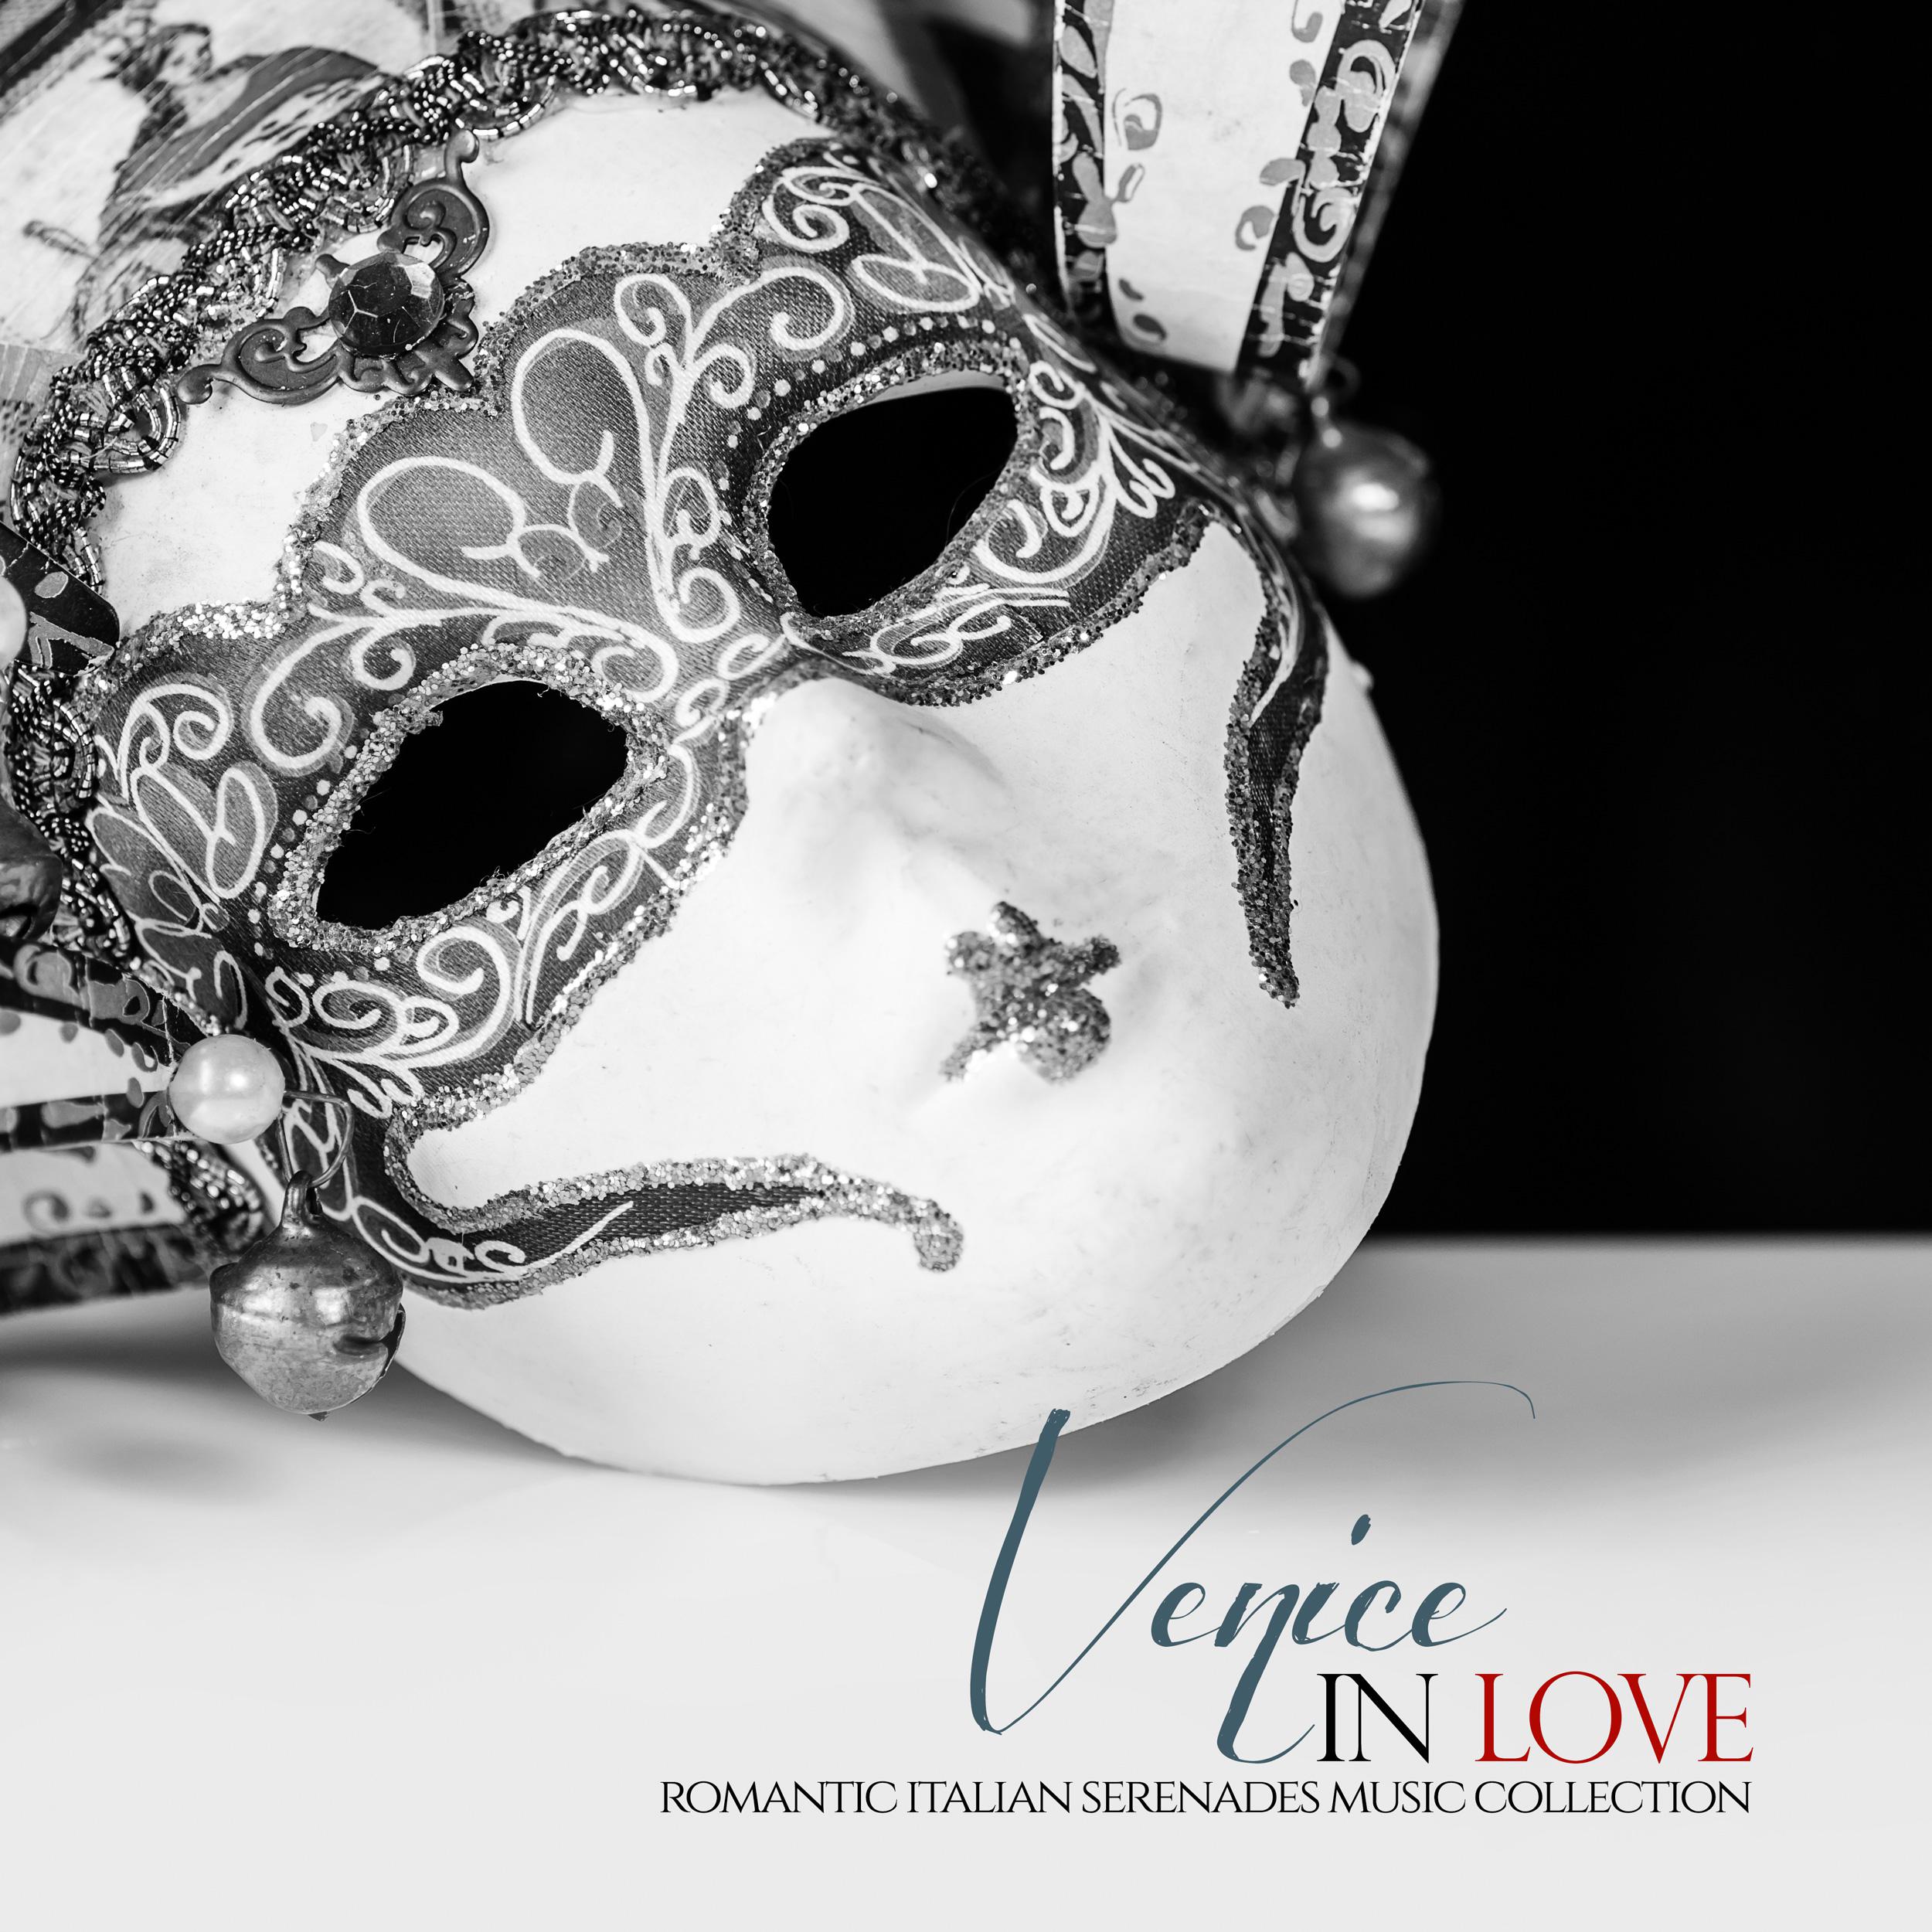 Venice in Love Romantic Italian Serenades Music Collection